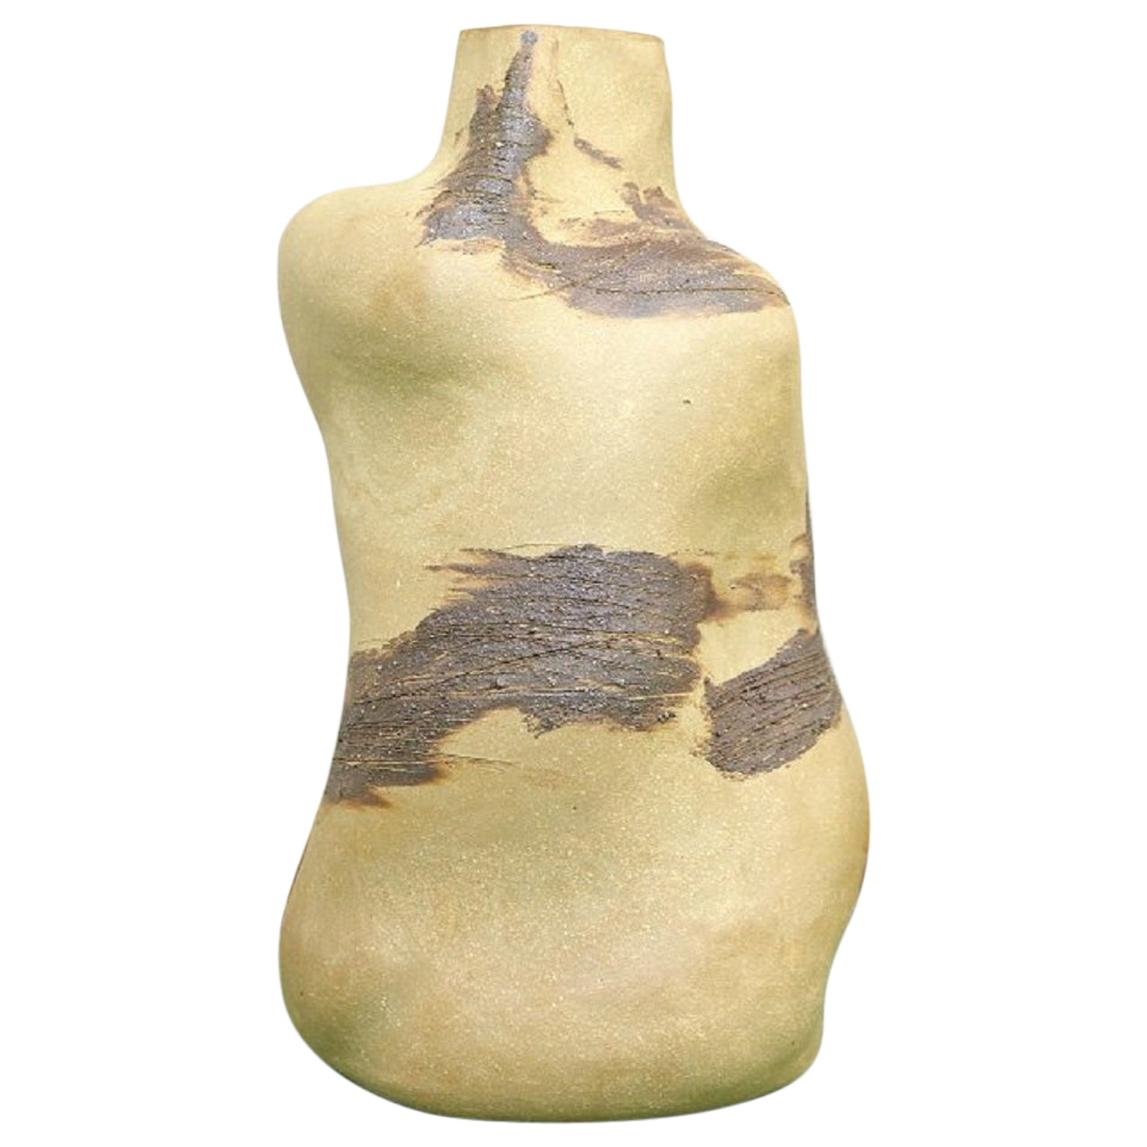 Christina Muff, Bottle-Shaped Sculptural Vase in Golden Stoneware